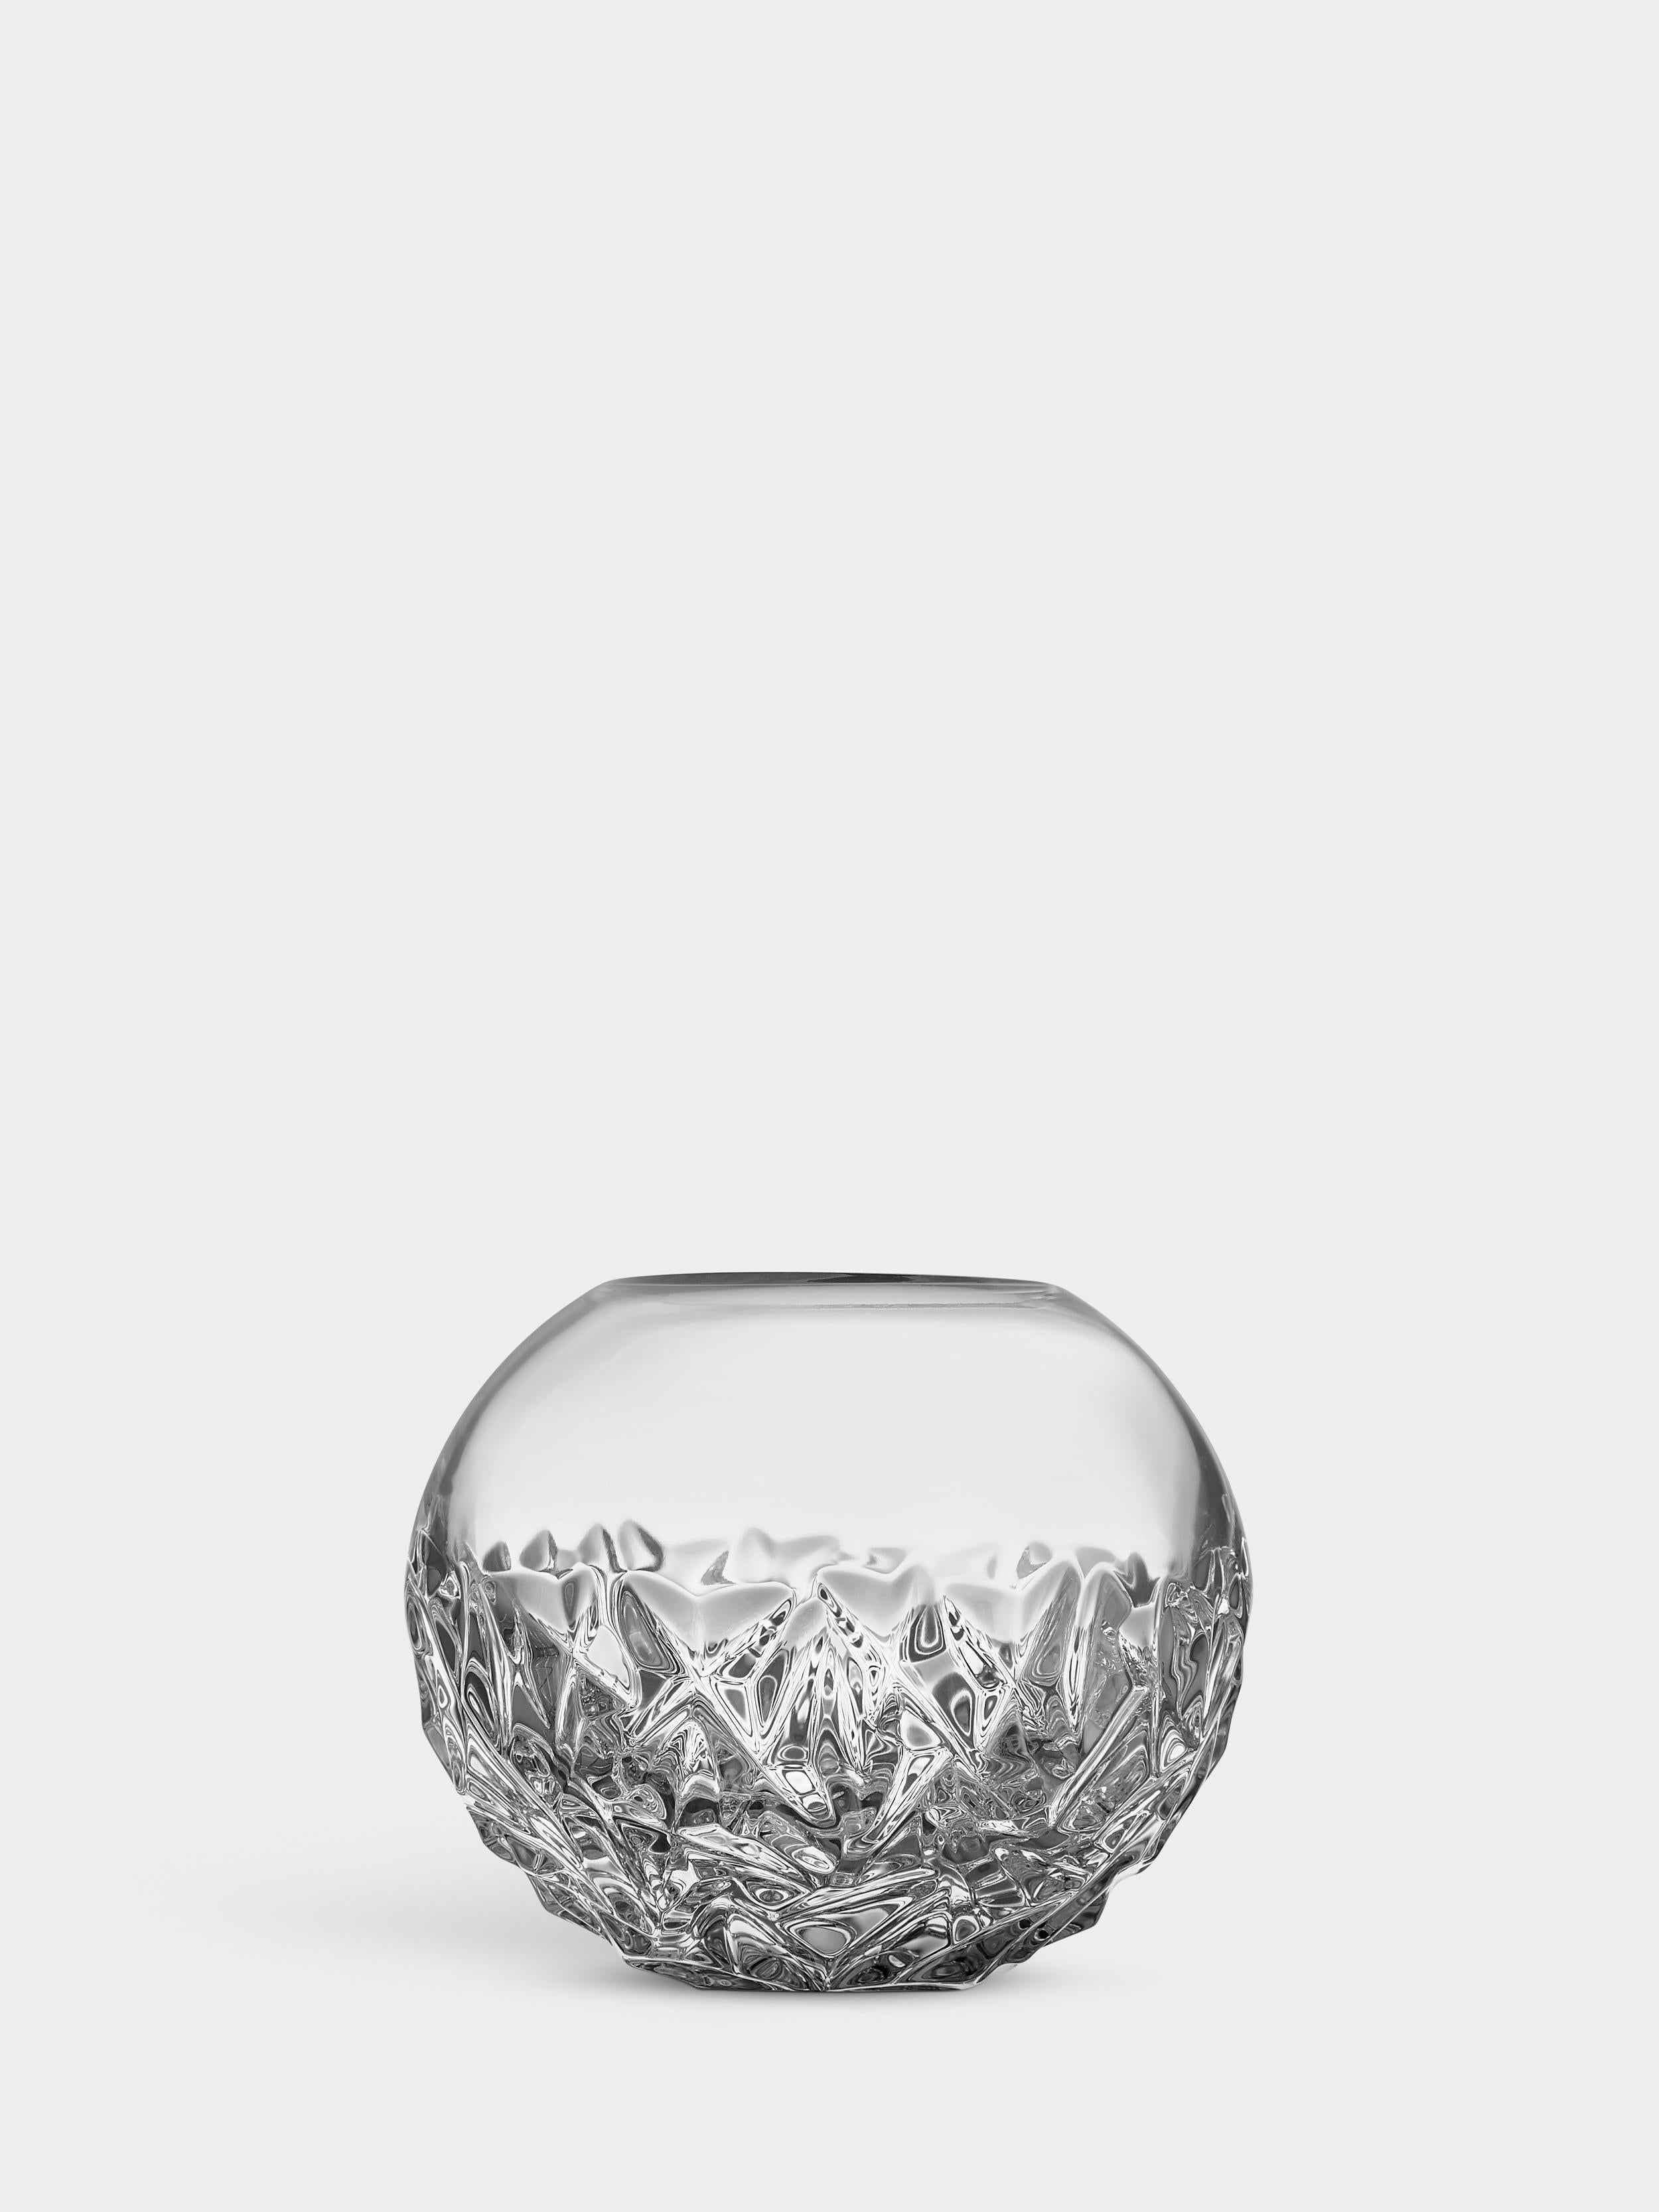 La collection Carat est basée sur une interprétation contemporaine du verre taillé traditionnel qui a fait la renommée mondiale d'Orrefors. Le vase Carat Globe Vase Small présente un motif asymétrique à la base, qui produit de magnifiques reflets de